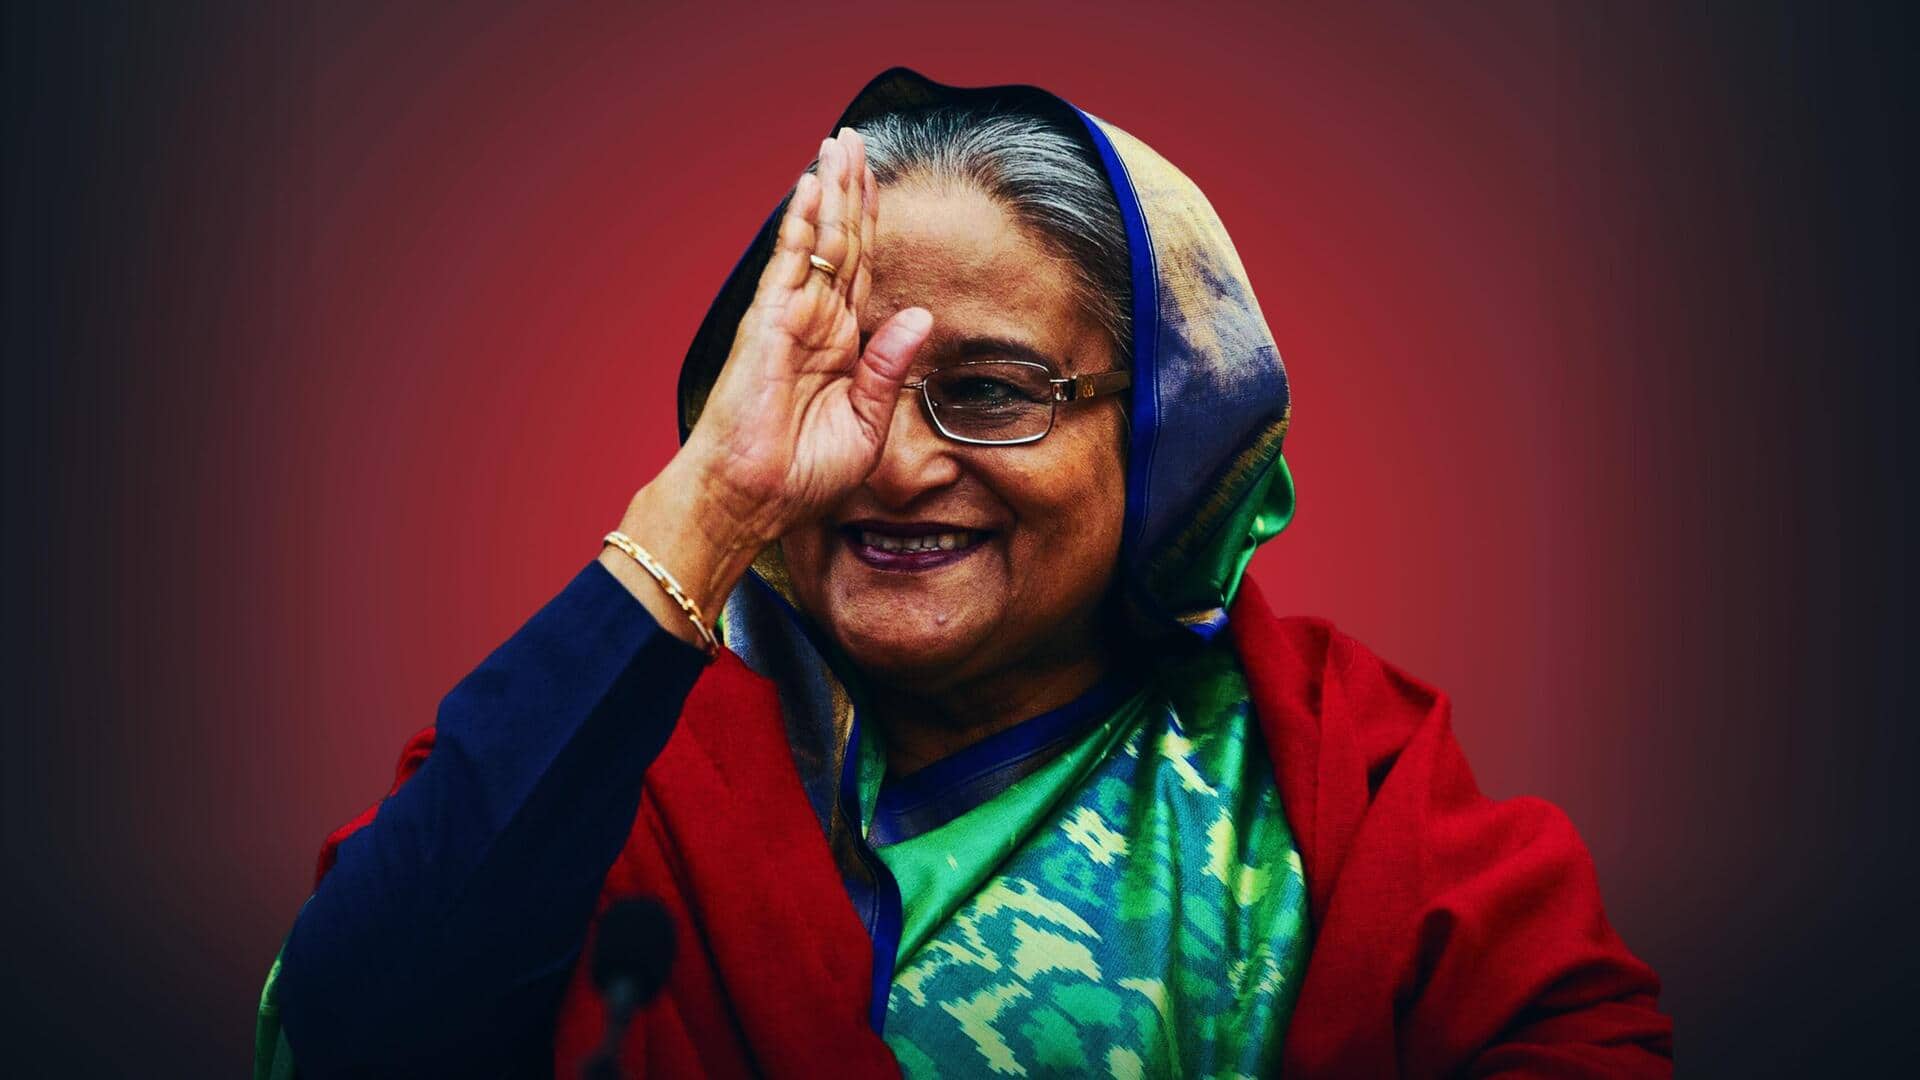 #NewsBytesExplainer: बांग्लादेश के आम चुनाव में प्रधानमंत्री शेख हसीना की जीत तय क्यों मानी जा रही? 